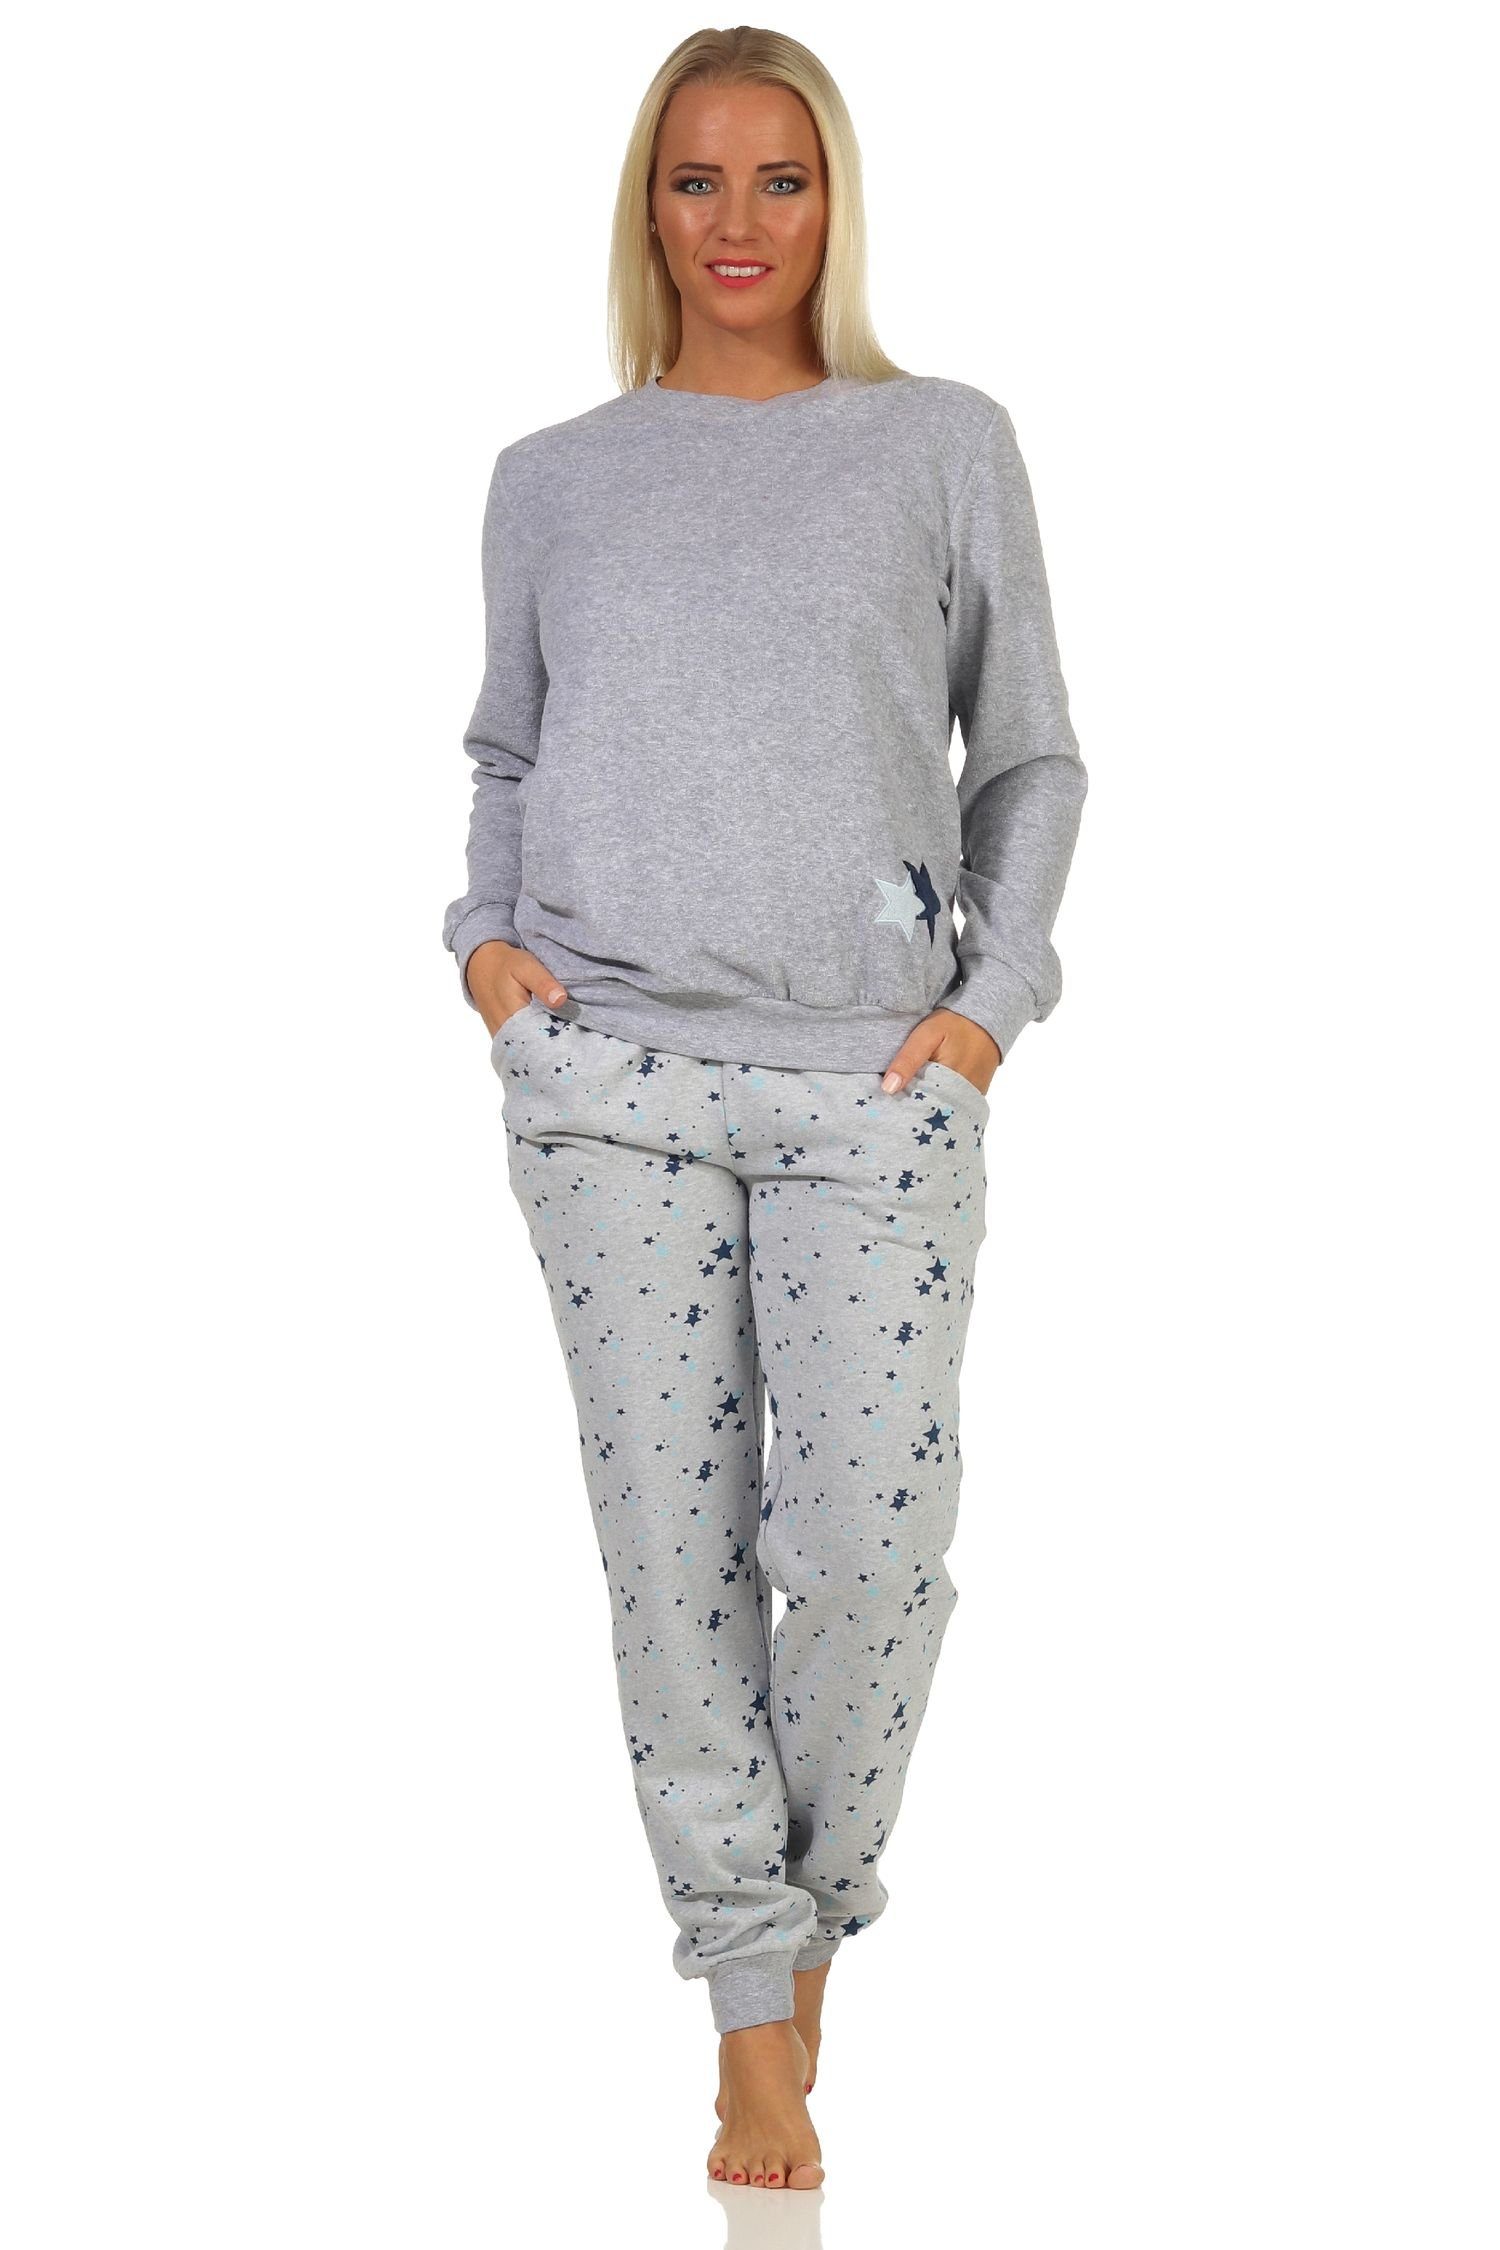 Frottee grau-melange -auch Sterne Motiv mit Übergröße Bündchen Damen Normann Pyjama als in Pyjama